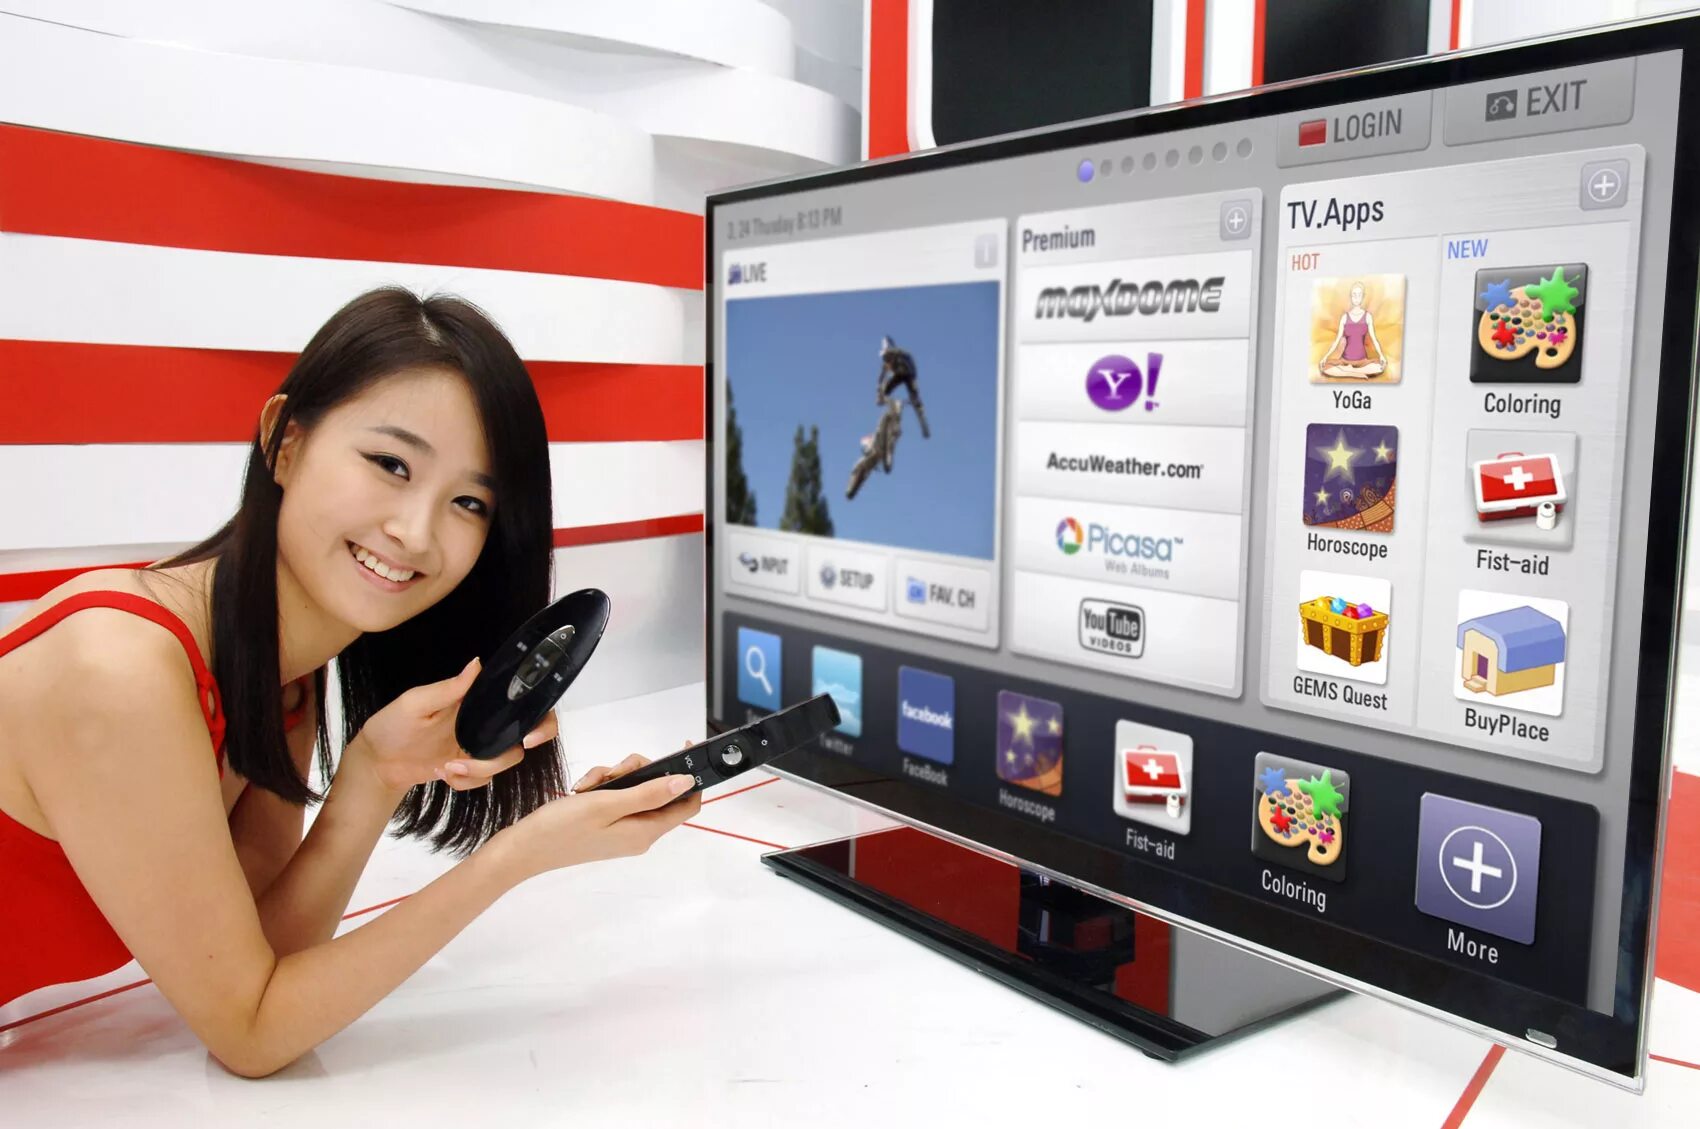 Телевизор LG Smart TV. ЛГ смарт ТВ 1. Телевизор с выходом в интернет. Современные телевизоры с интернетом.